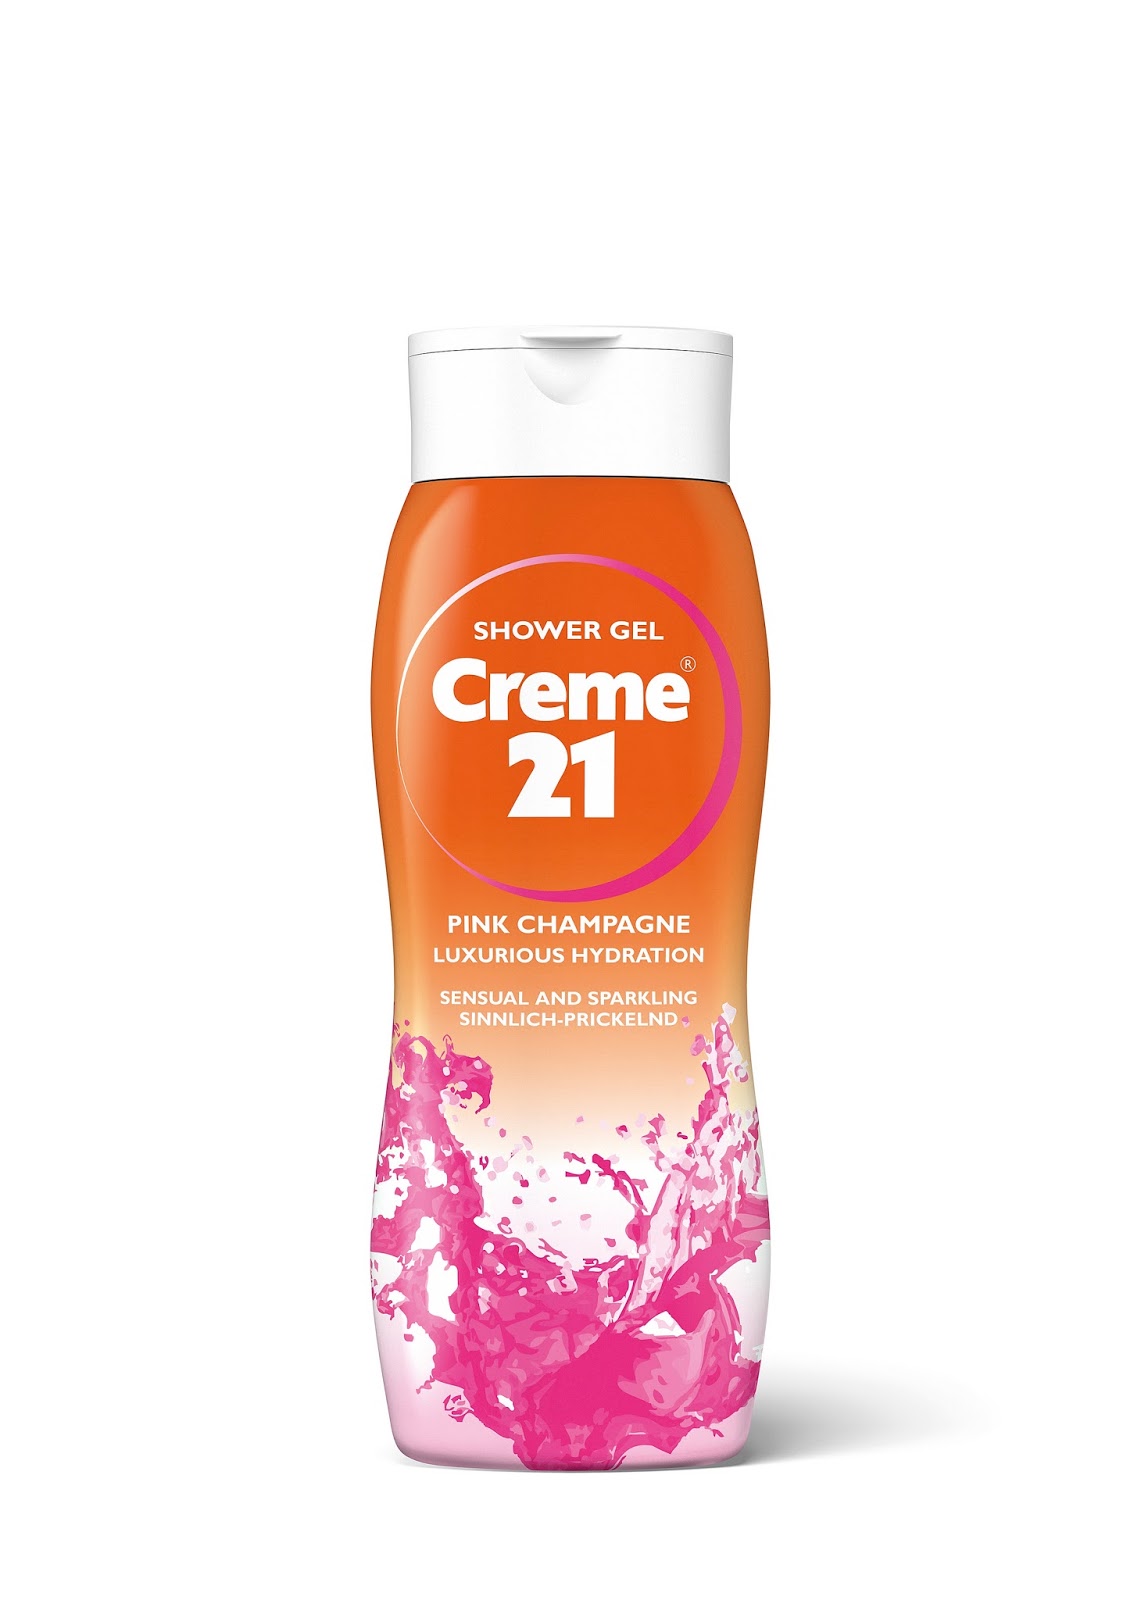 Перевести gel. Creme Shower Gel. Гель для душа розовое шампанское. Гель для душа бренды. Creme 21 гель для рук.